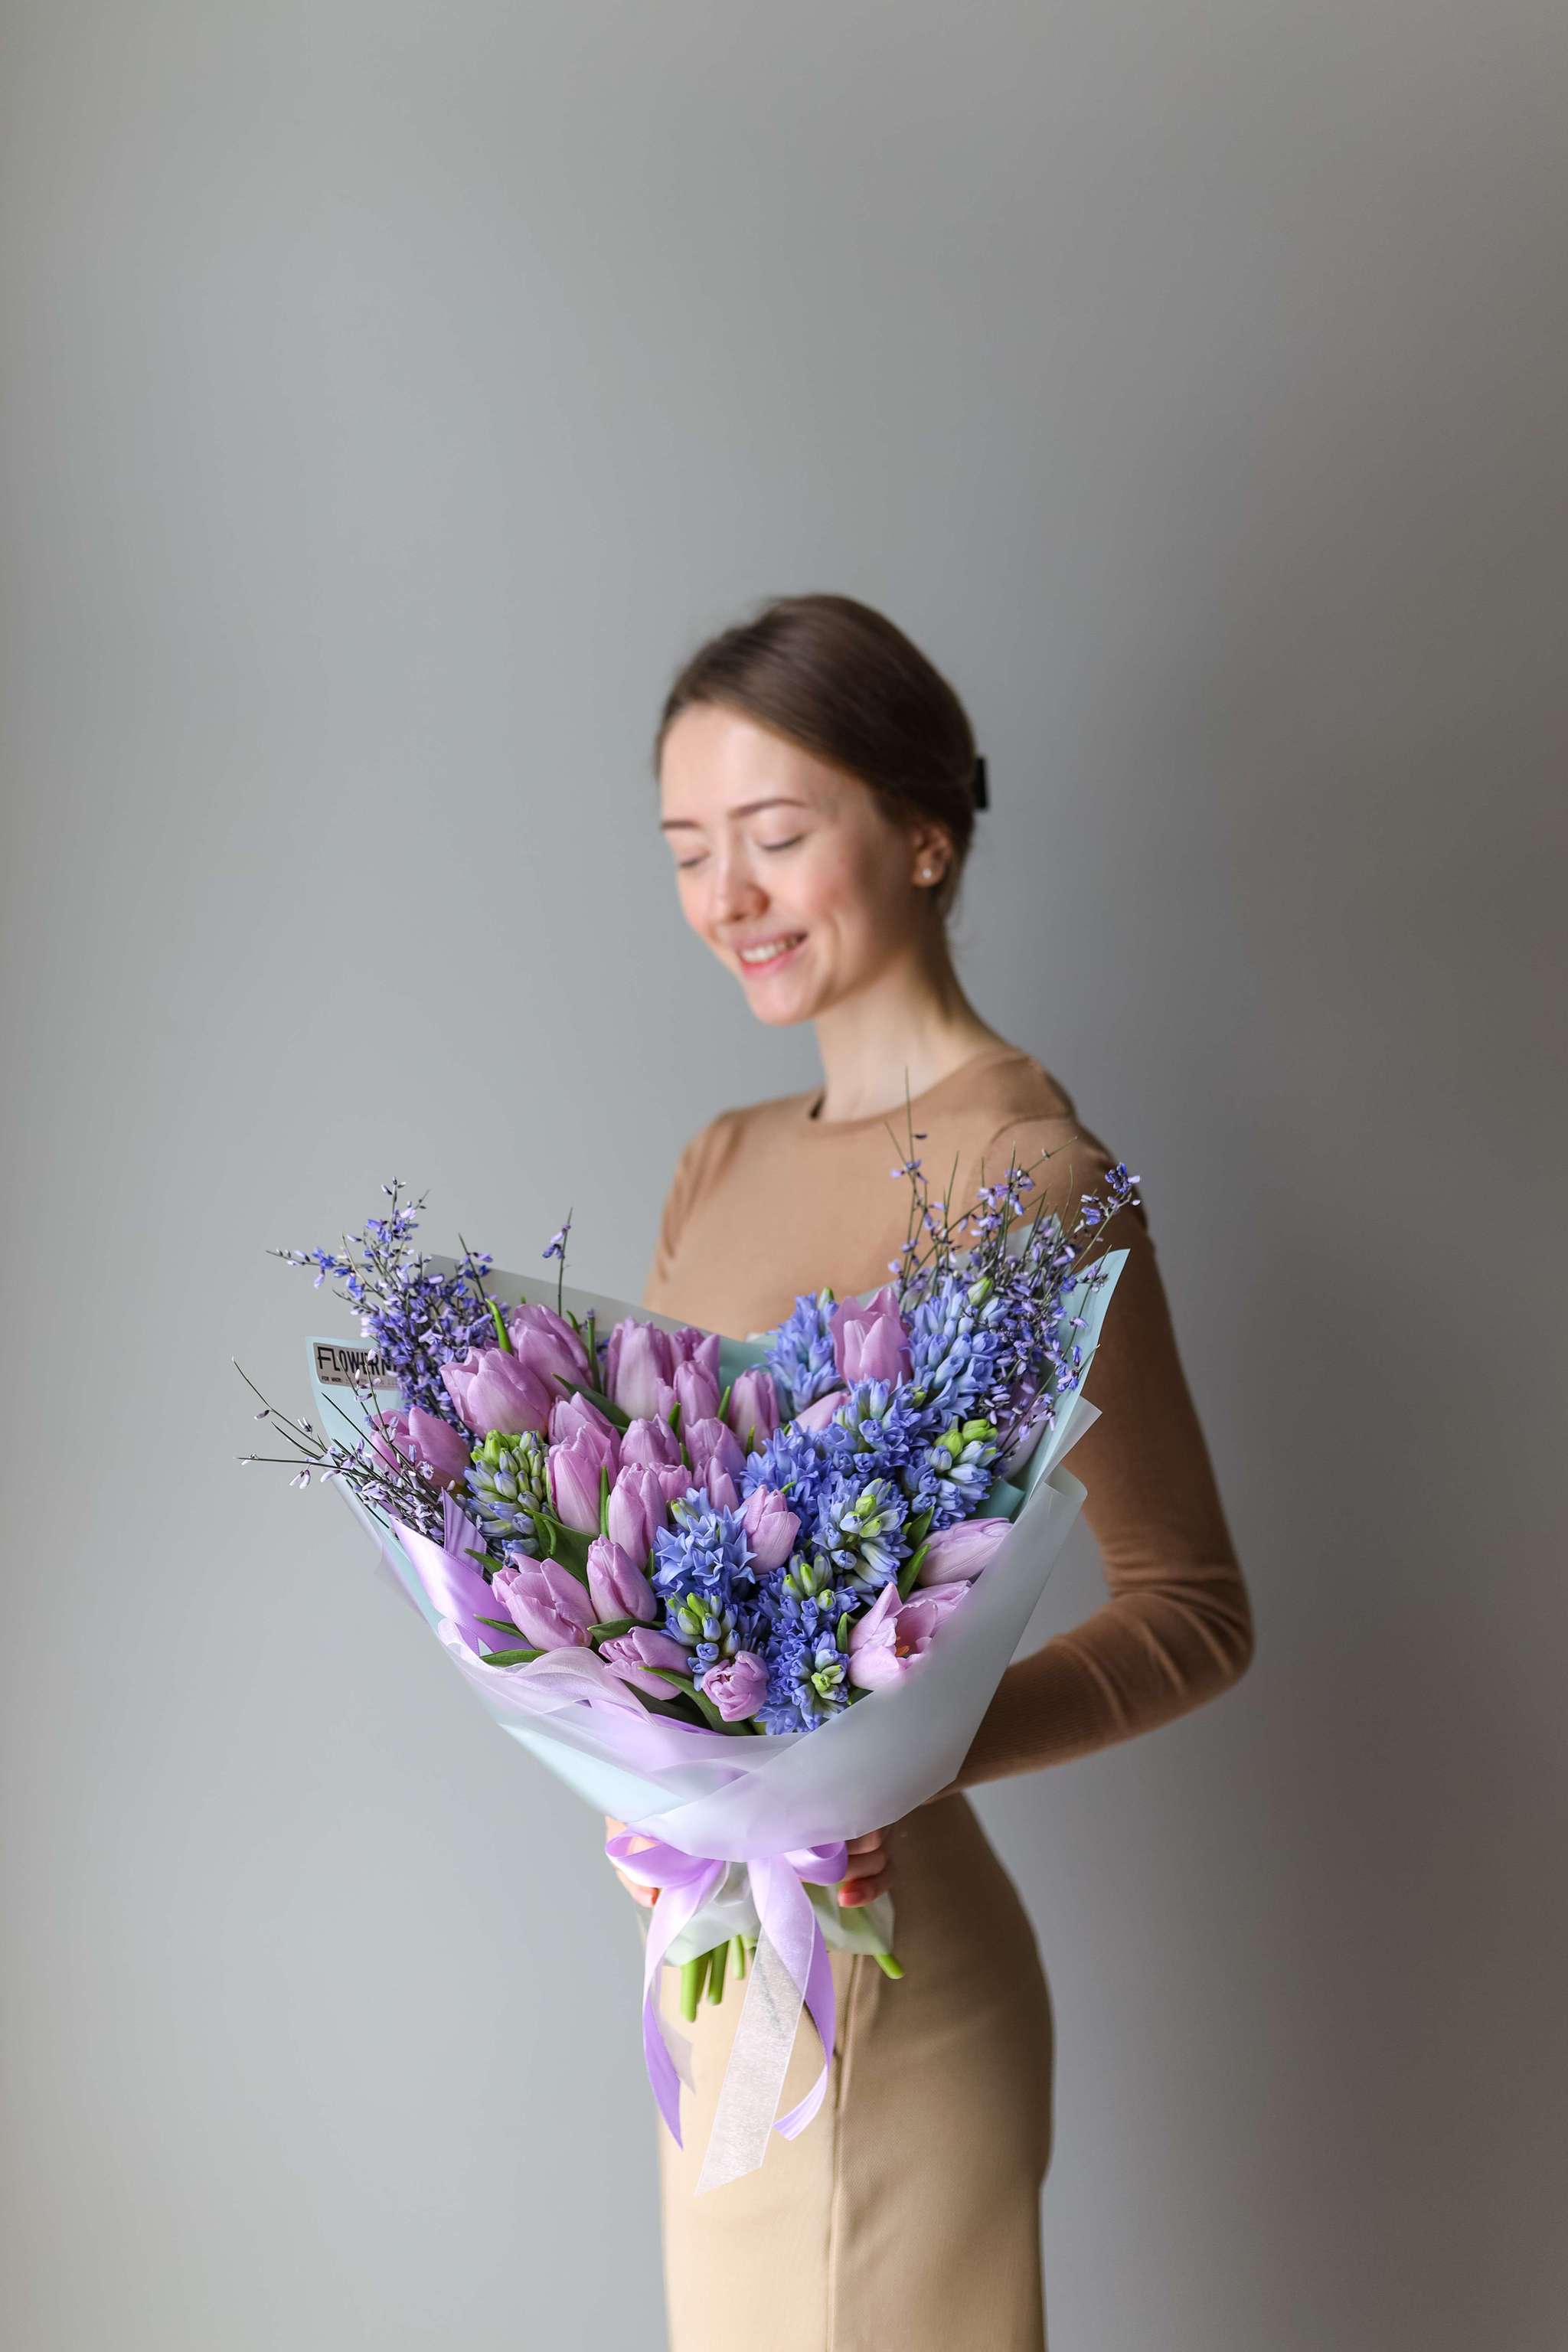 Весенние цветы в вазе - заказать доставку цветов в Москве от Leto Flowers